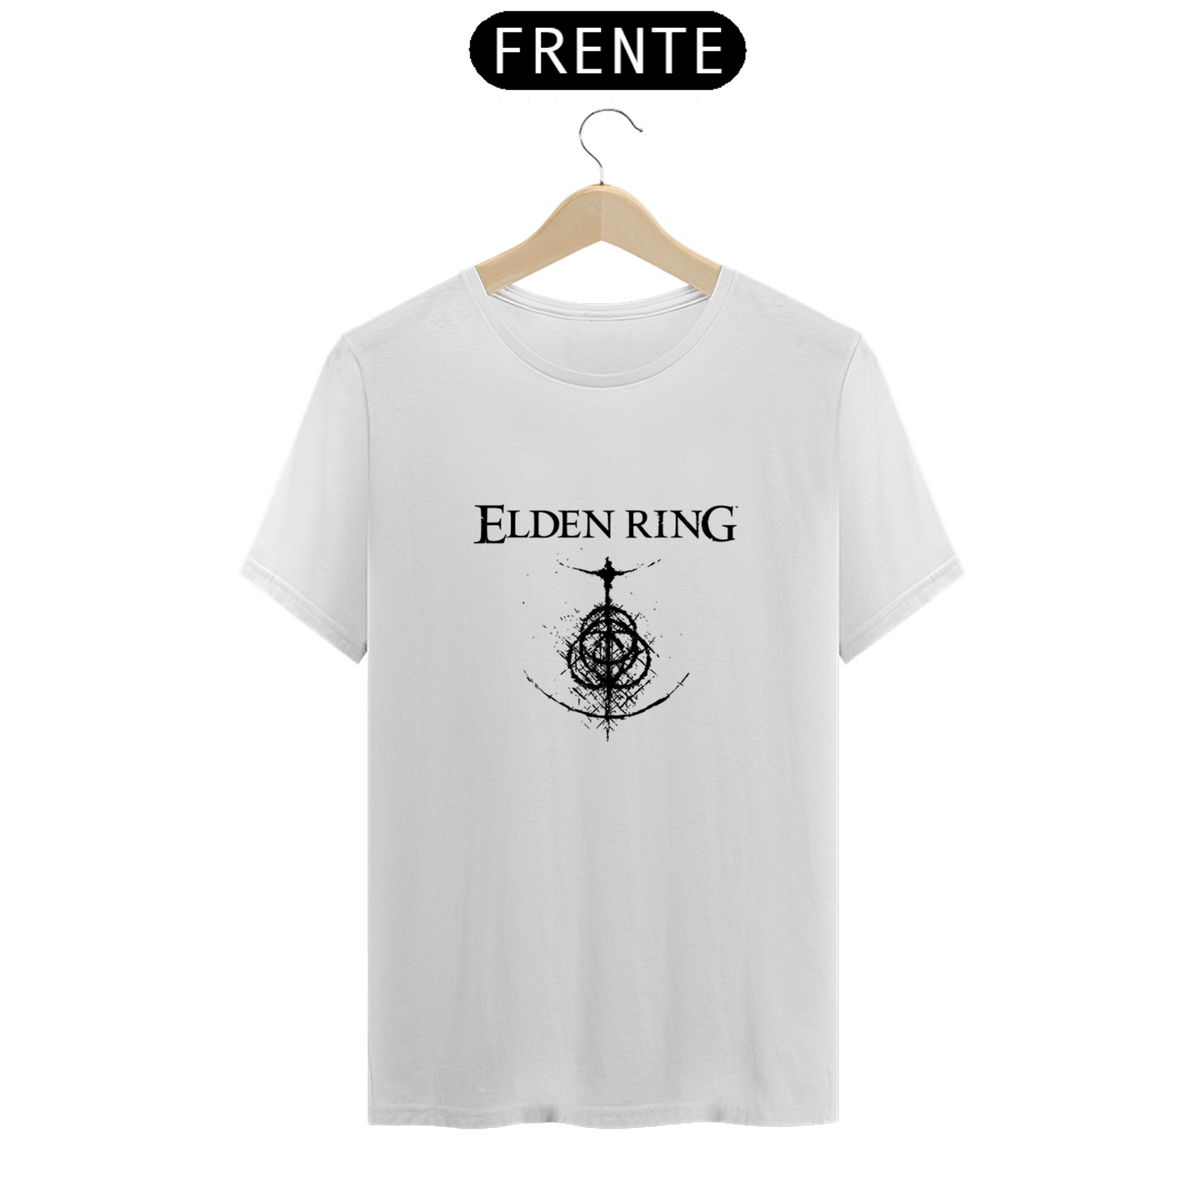 Nome do produto: Camiseta Unissex Elden Ring 4